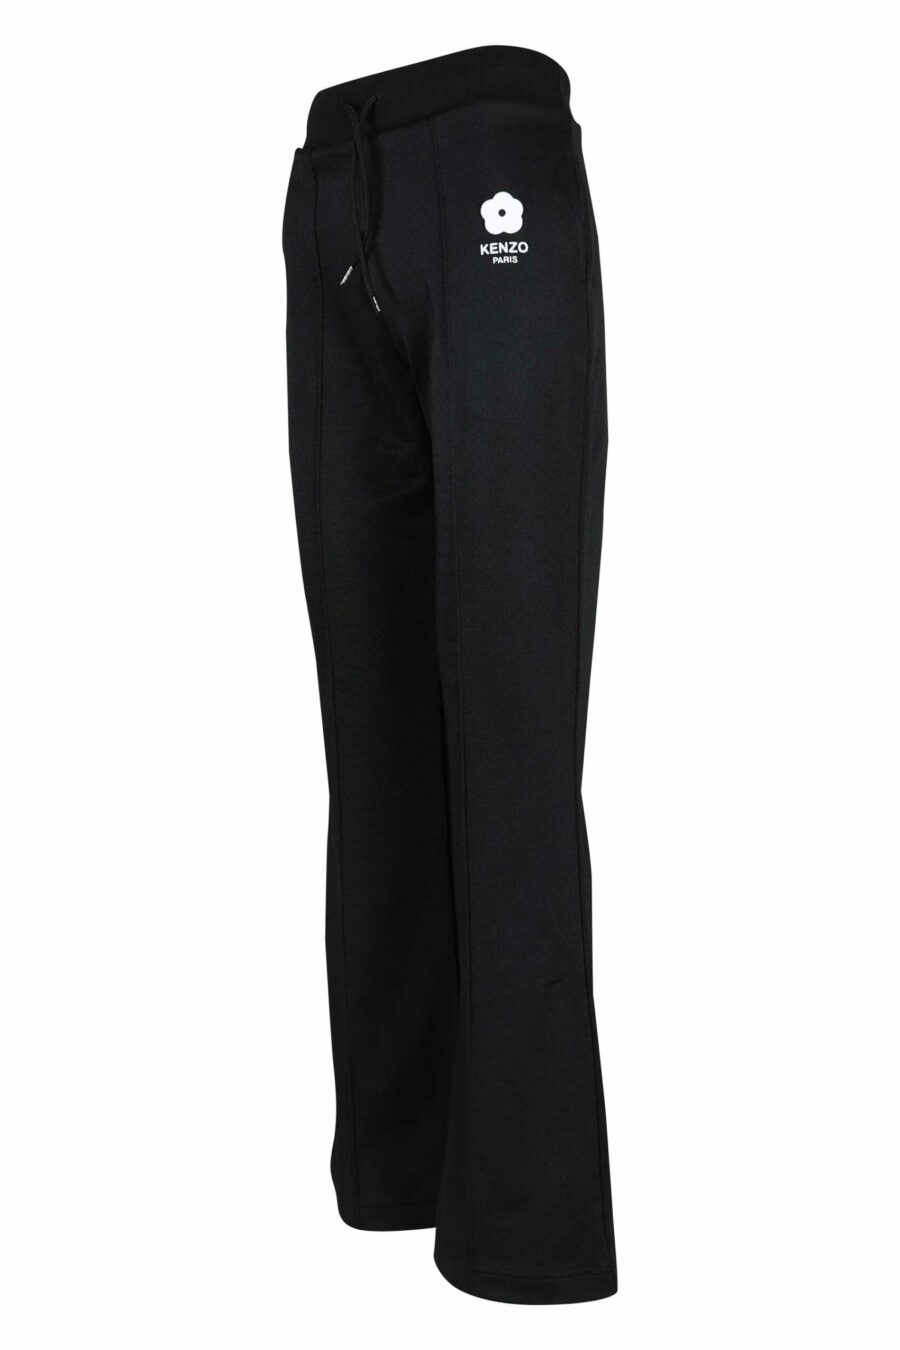 Pantalón de chándal negro con minilogo "boke flower" blanco - 3612230582309 1 scaled